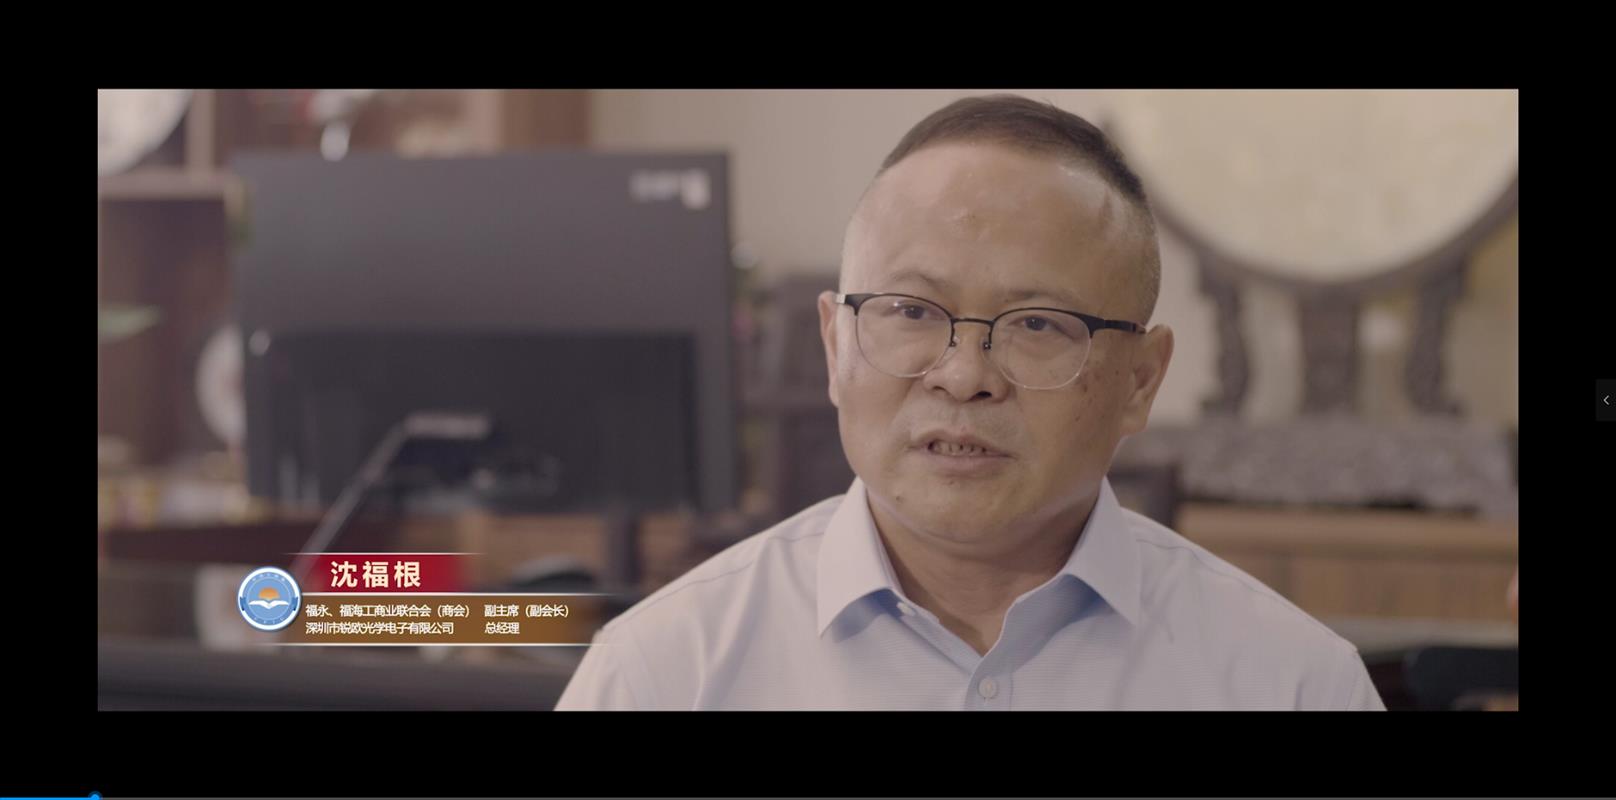 锐欧光学总经理丨深圳特区40周年采访